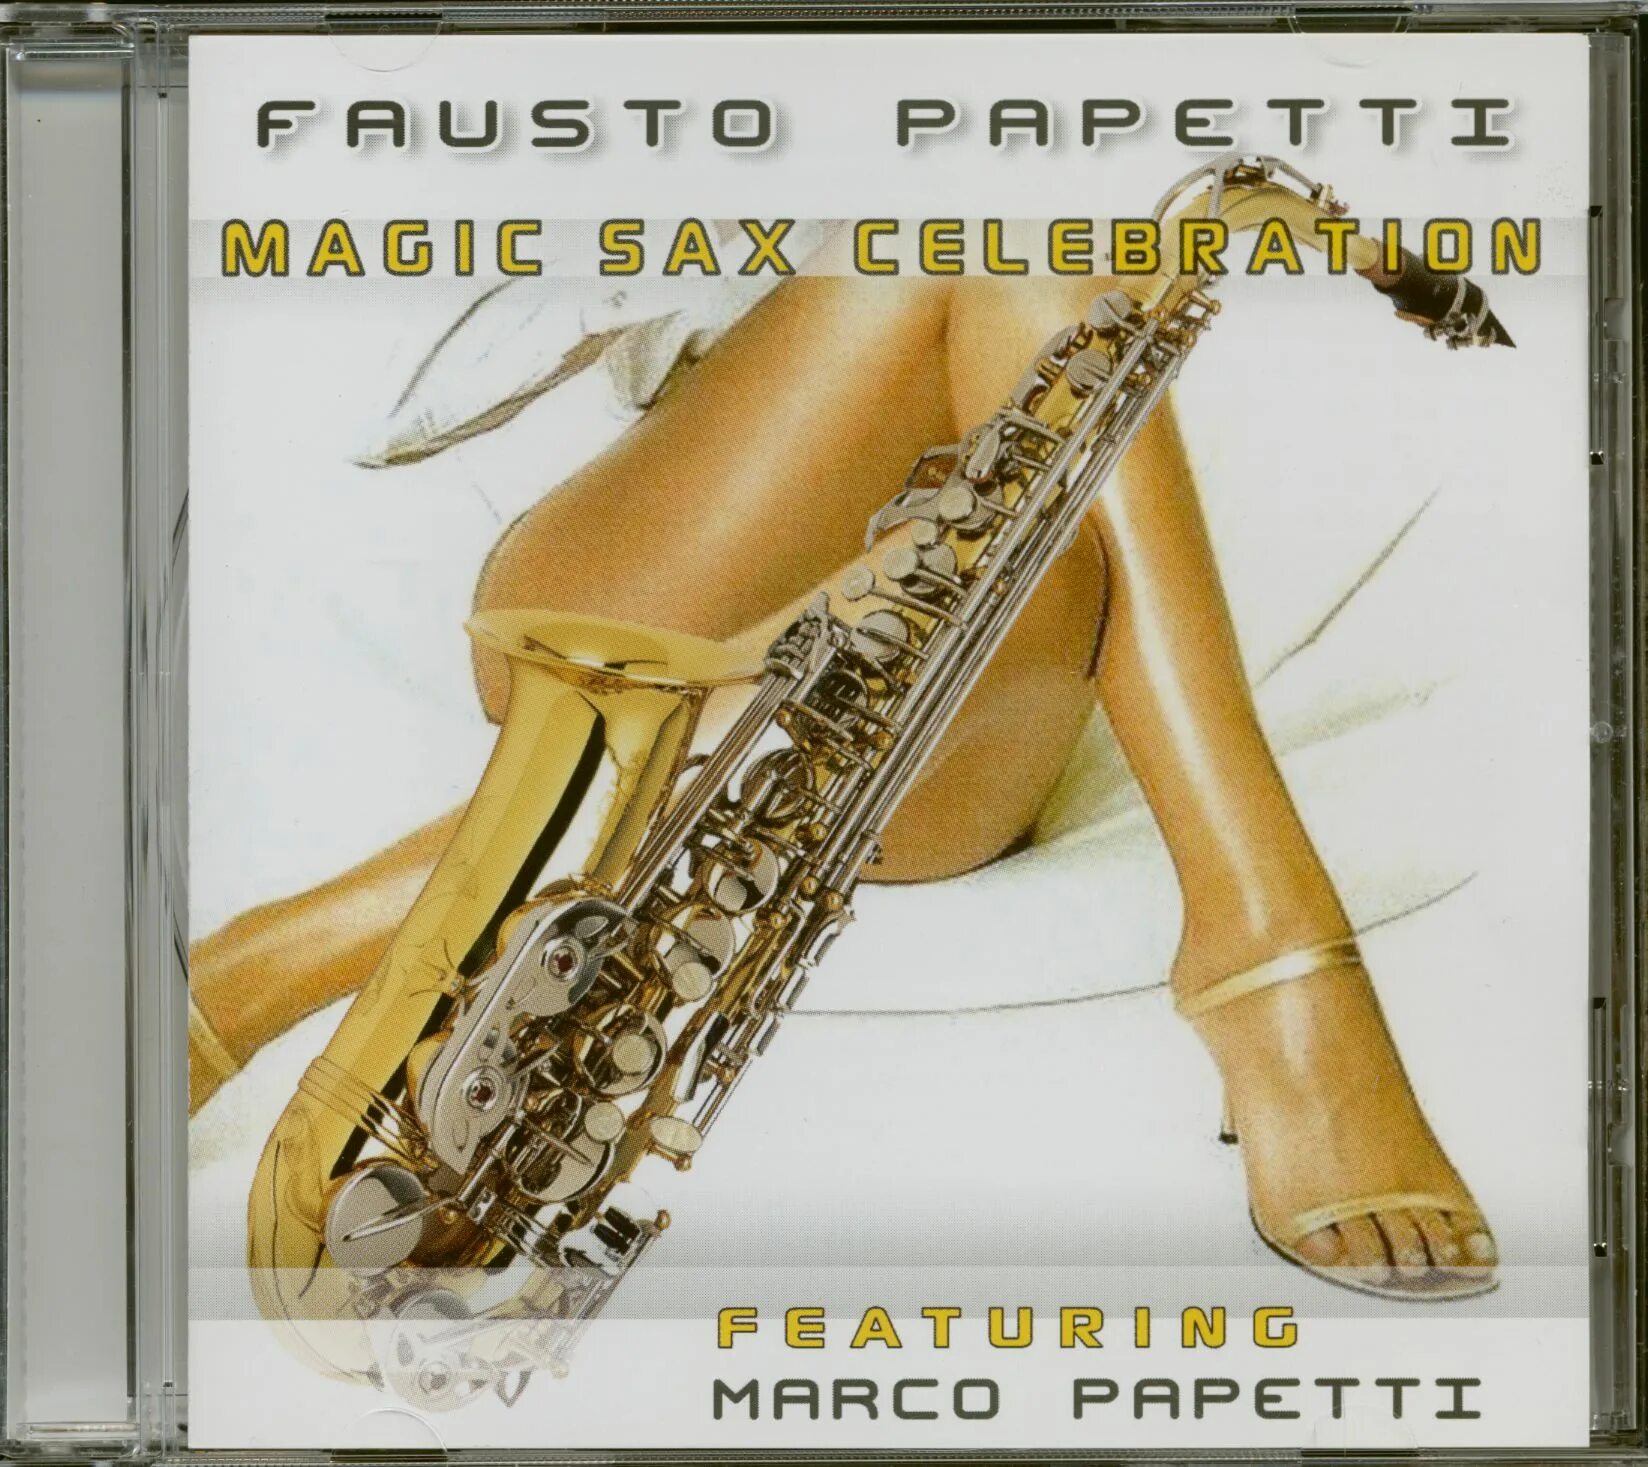 Саксофон альбомы. Fausto Papetti обложка. Фаусто папетти саксофон. Fausto Papetti обложки дисков. Fausto Papetti - Magic Sax Celebration.